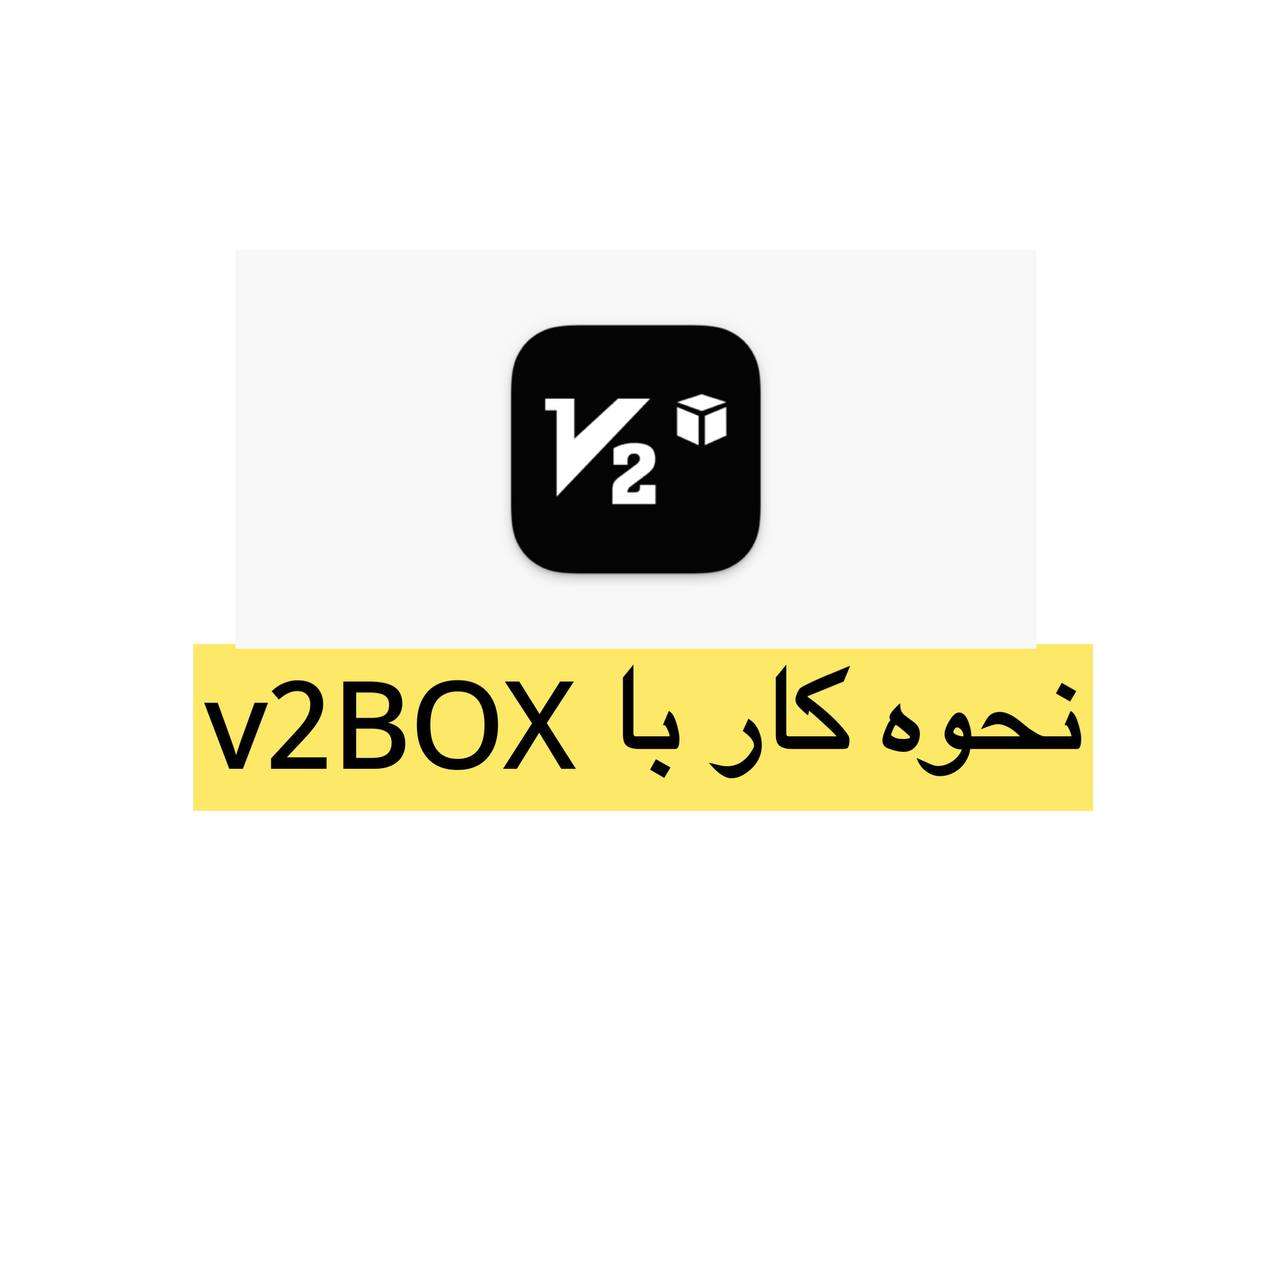 آموزش کار با v2BOx در آیفون اجراکننده vmess و vless